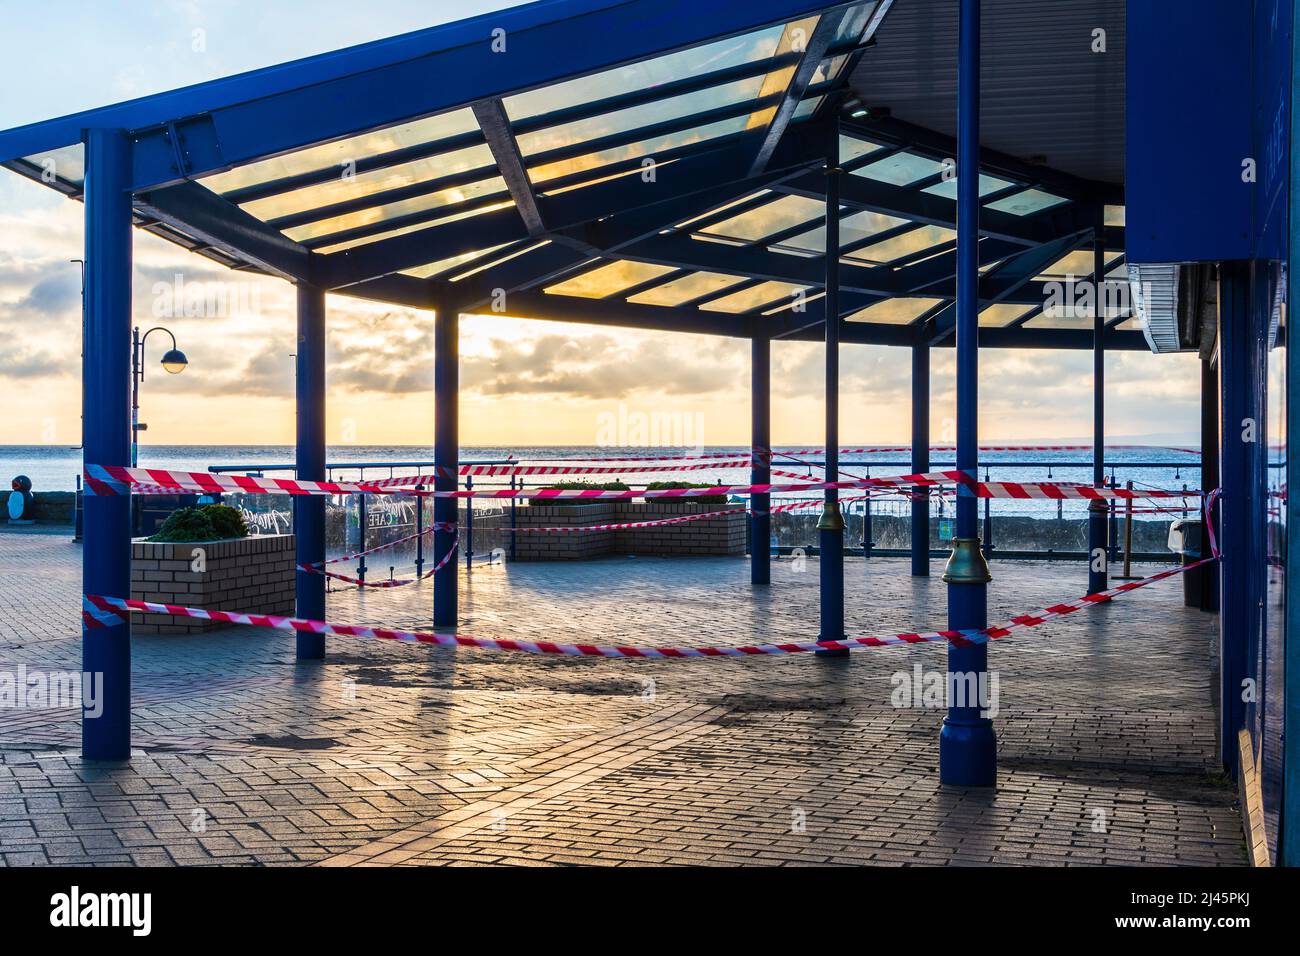 Le café Marco en bord de mer de Barry Island, un célèbre endroit de Gavin & Stacey, est fermé pendant les crises de Covid-19 lors d'une belle matinée ensoleillée. Banque D'Images